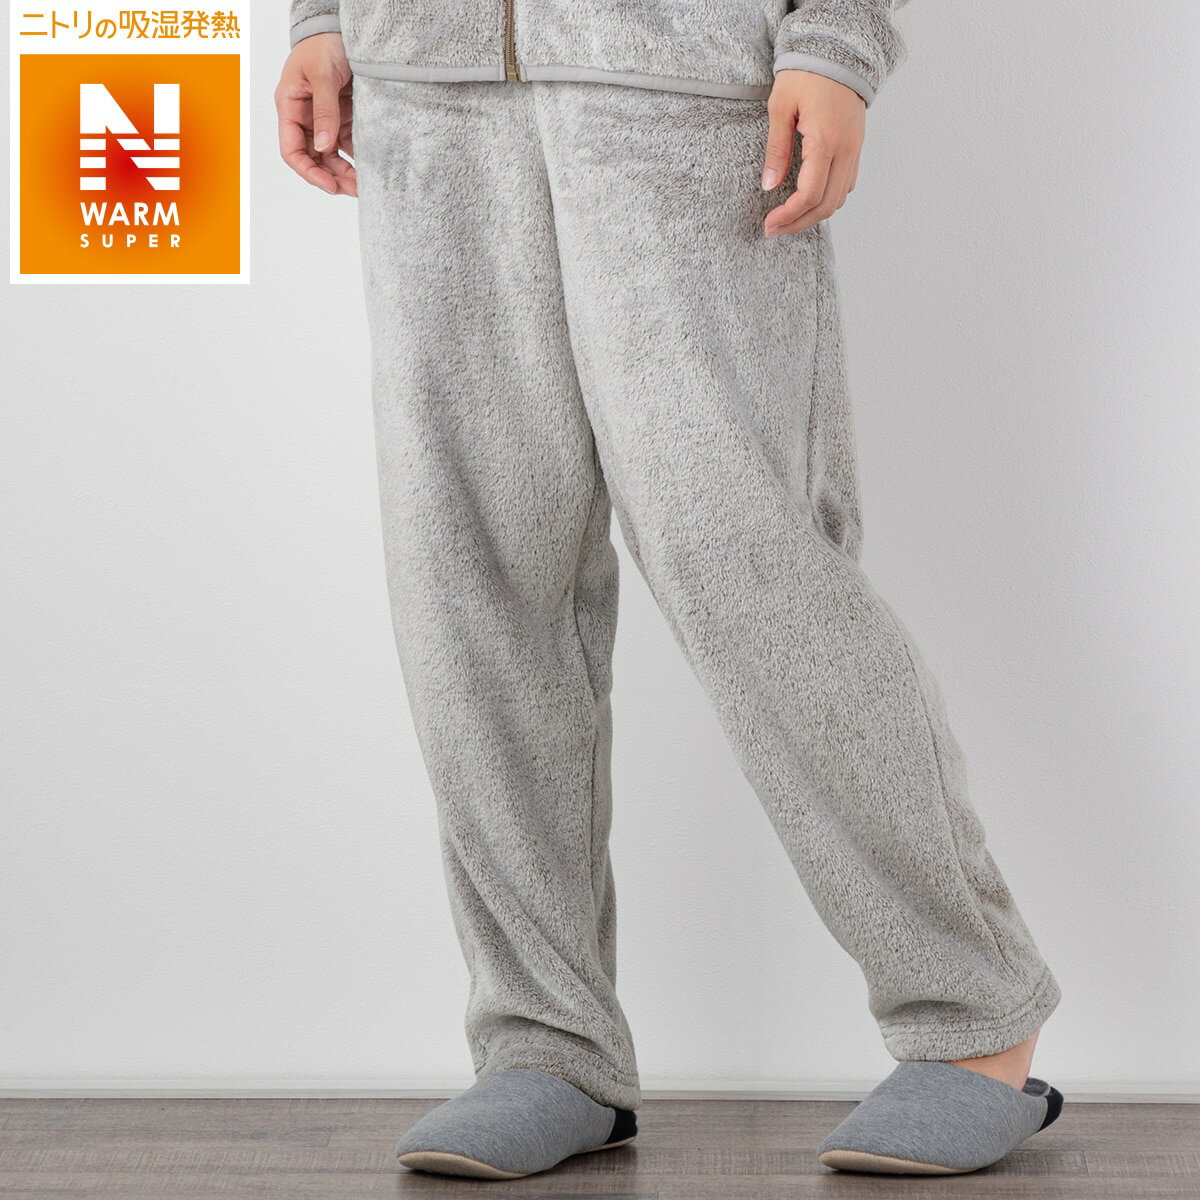 ニトリの着る毛布パンツ(NWSP 025 BR M)   【1年保証】(布団・寝具)